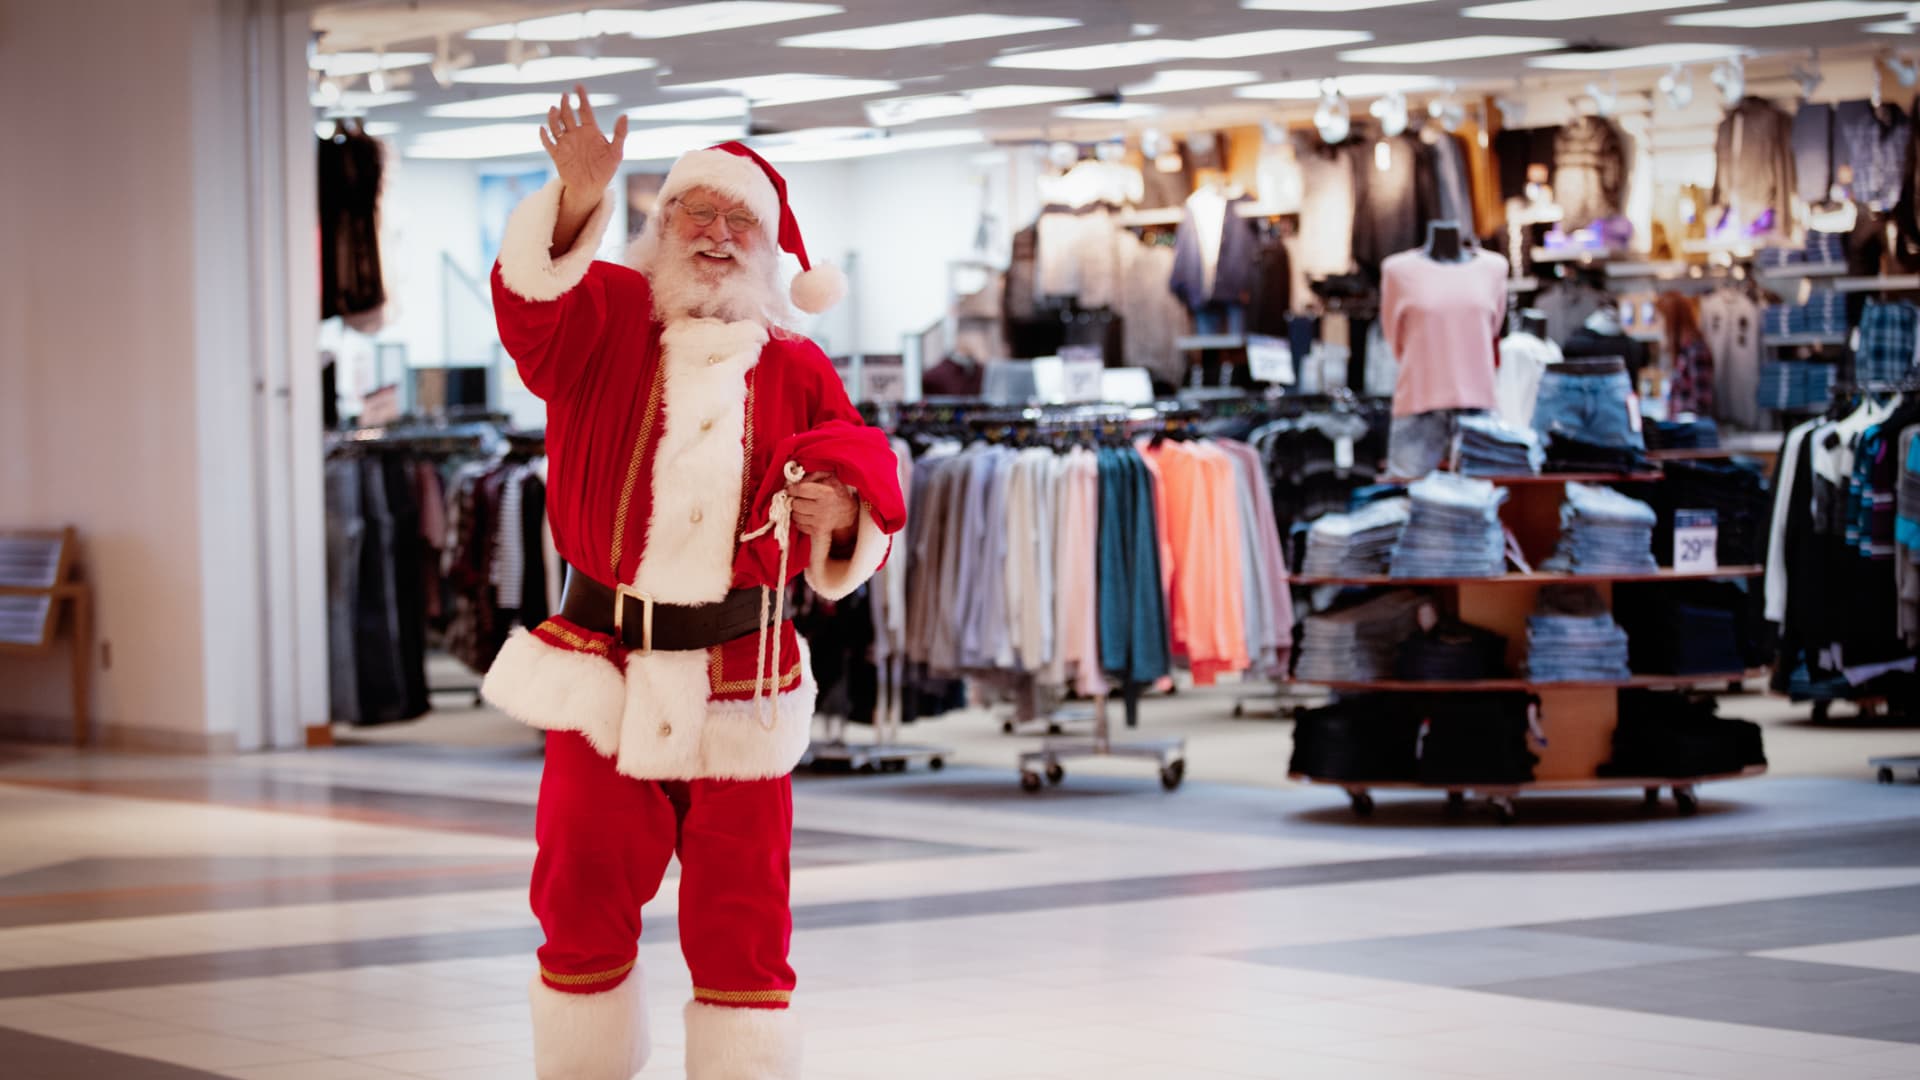 AI is giving Santa a boost this holiday season